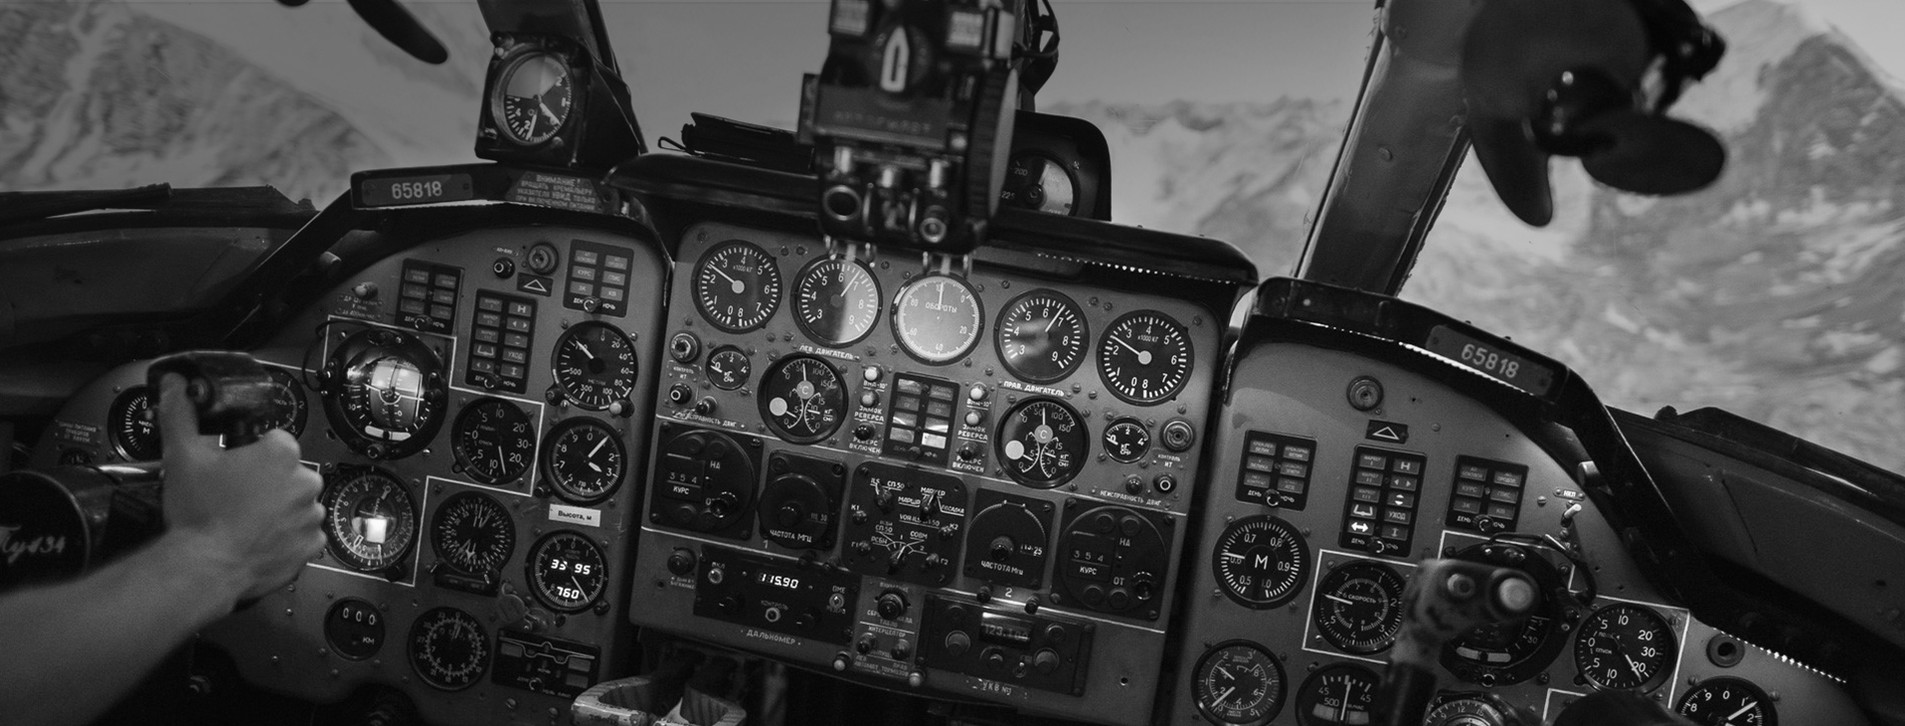 Фото 1 - Авіасимулятор ТУ-134 для компанії